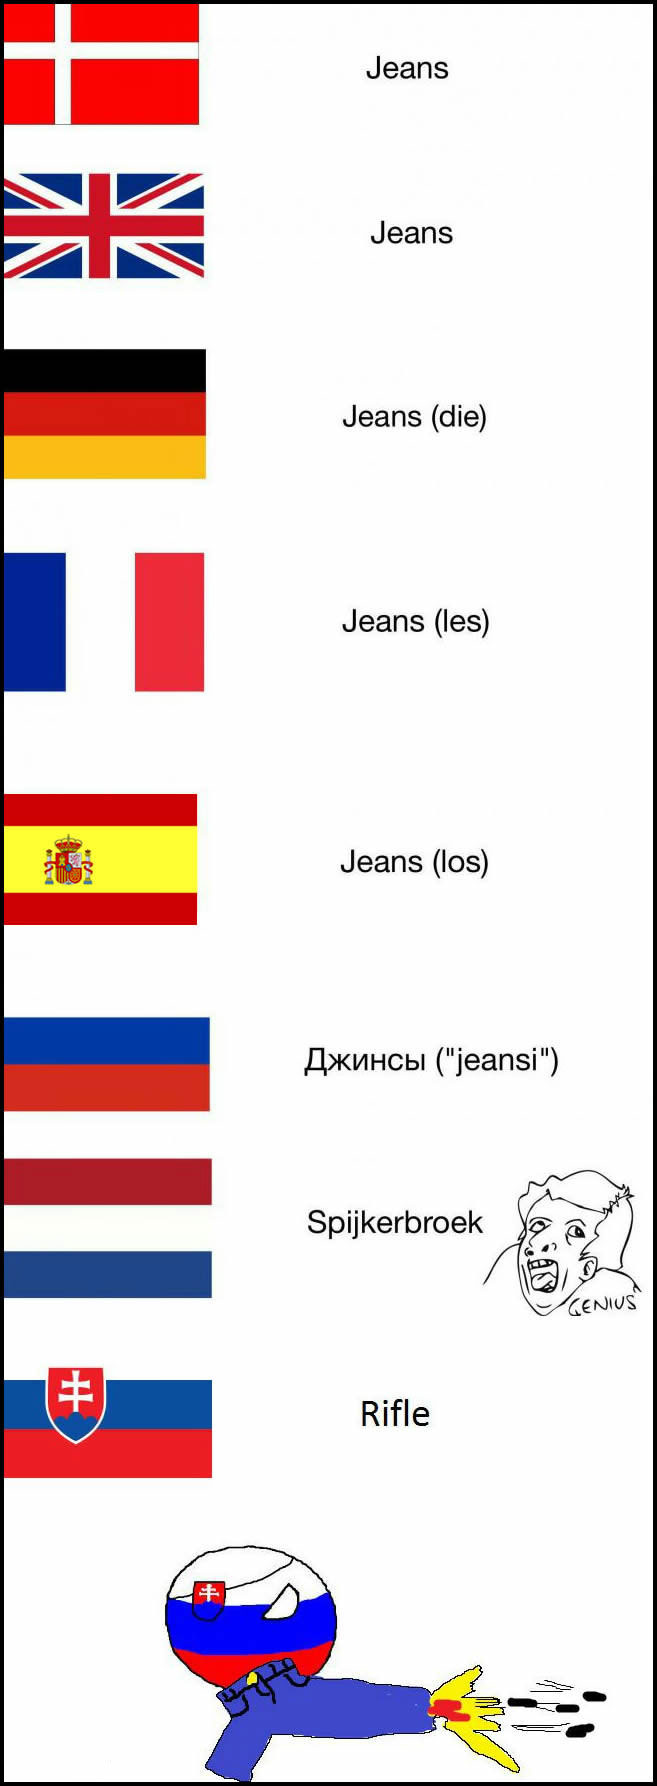 jeans in various languages, spijkerbroek, rifle